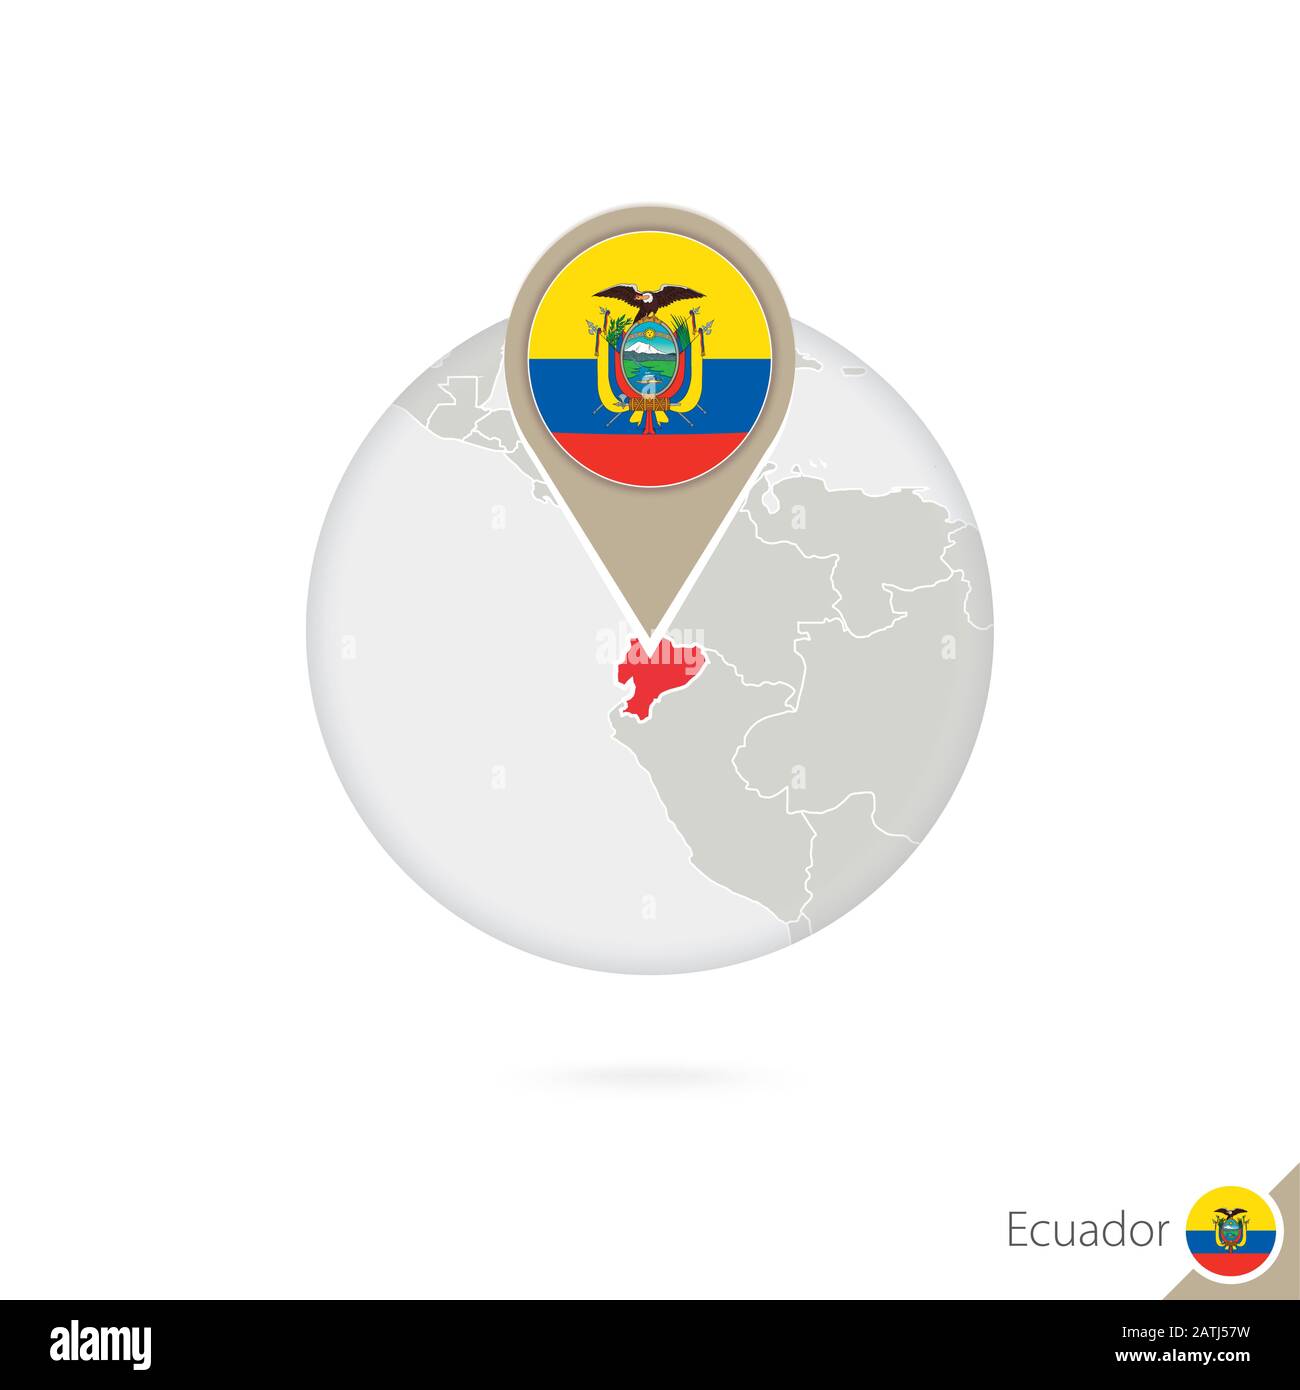 Ecuador map and flag in circle. Map of Ecuador, Ecuador flag pin. Map of Ecuador in the style of the globe. Vector Illustration. Stock Vector